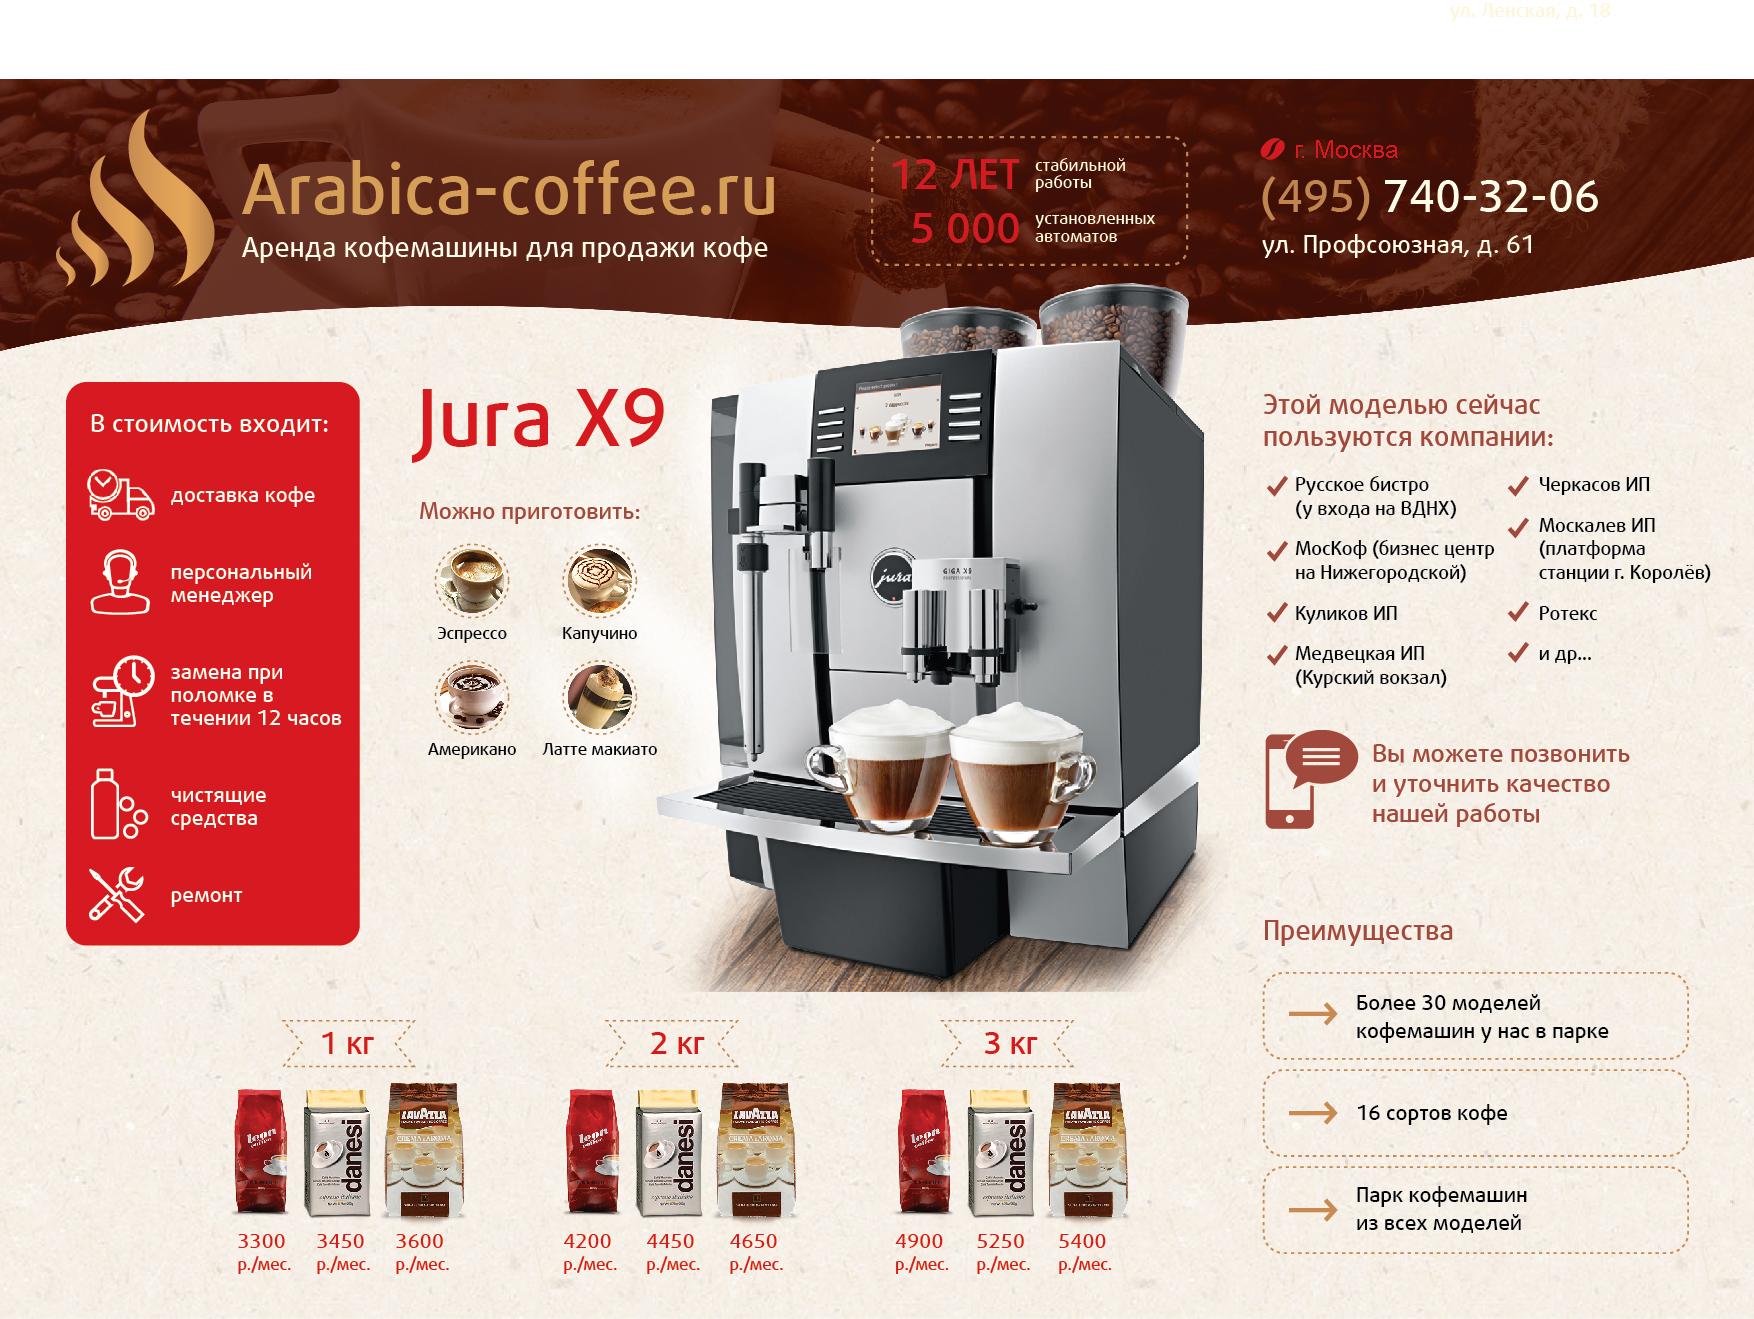 Какой хороший зерновой кофе для кофемашины. Кофе Арабика для кофемашины. Кофе из кофемашины. Реклама кофе из кофемашины. Кофемашины для продажи кофе.